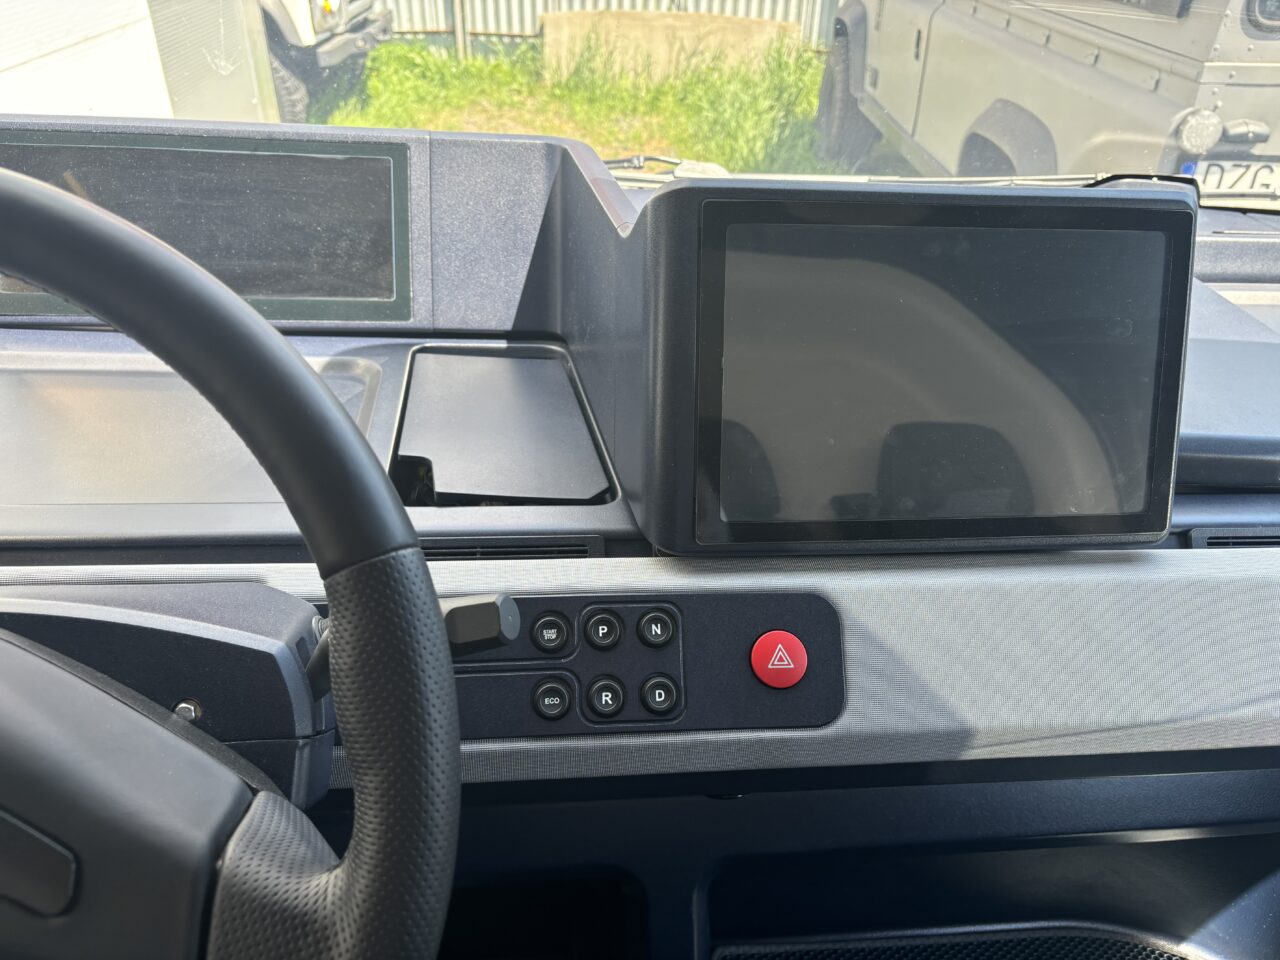 Kokpit samochodu elektrycznego z dużym ekranem dotykowym na centralnej konsoli i przyciskami kontroli jazdy.